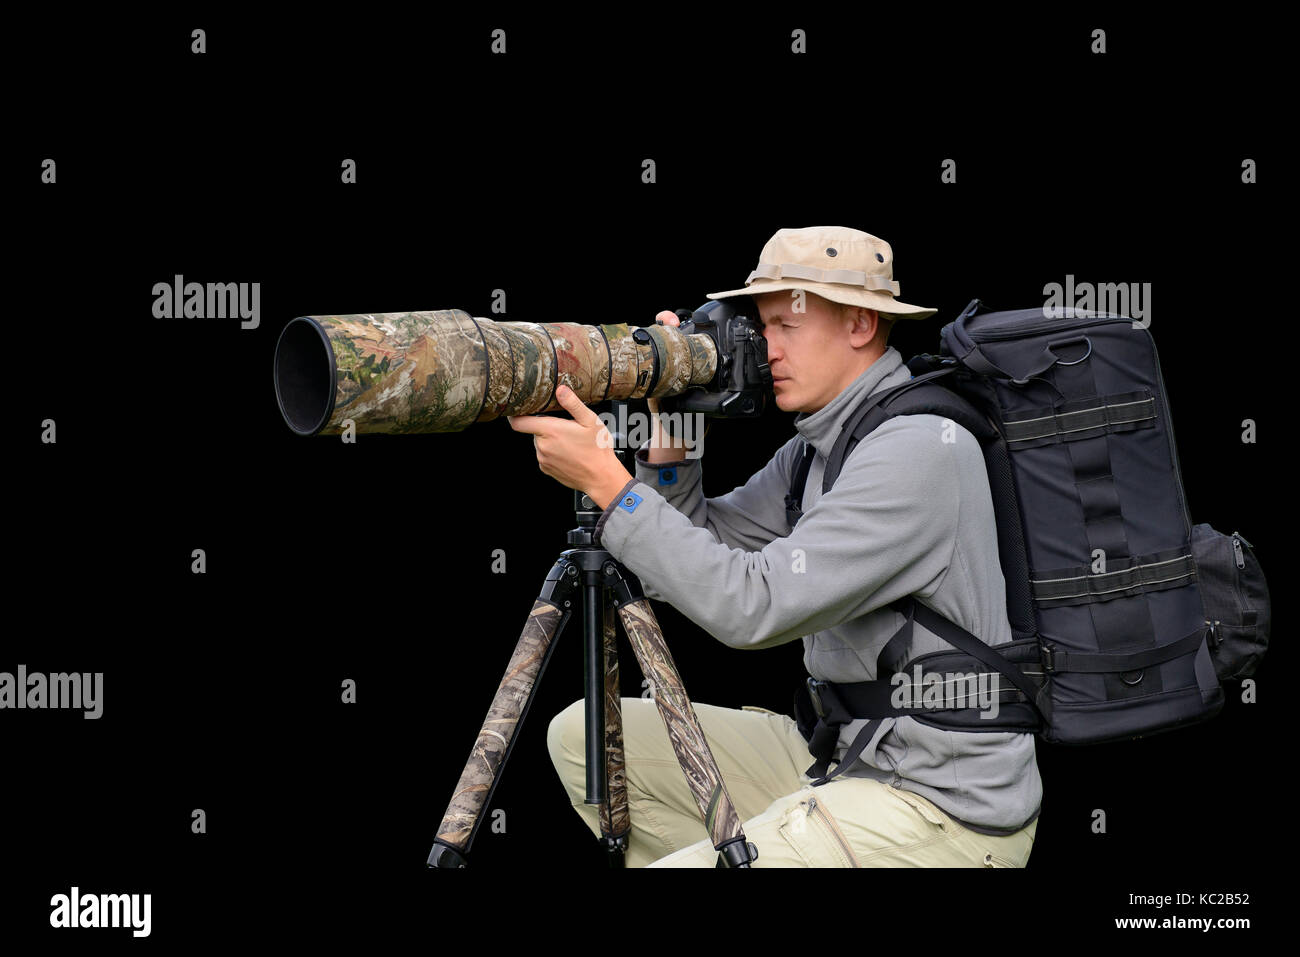 Professional wildlife photographer isolated on black background Stock Photo